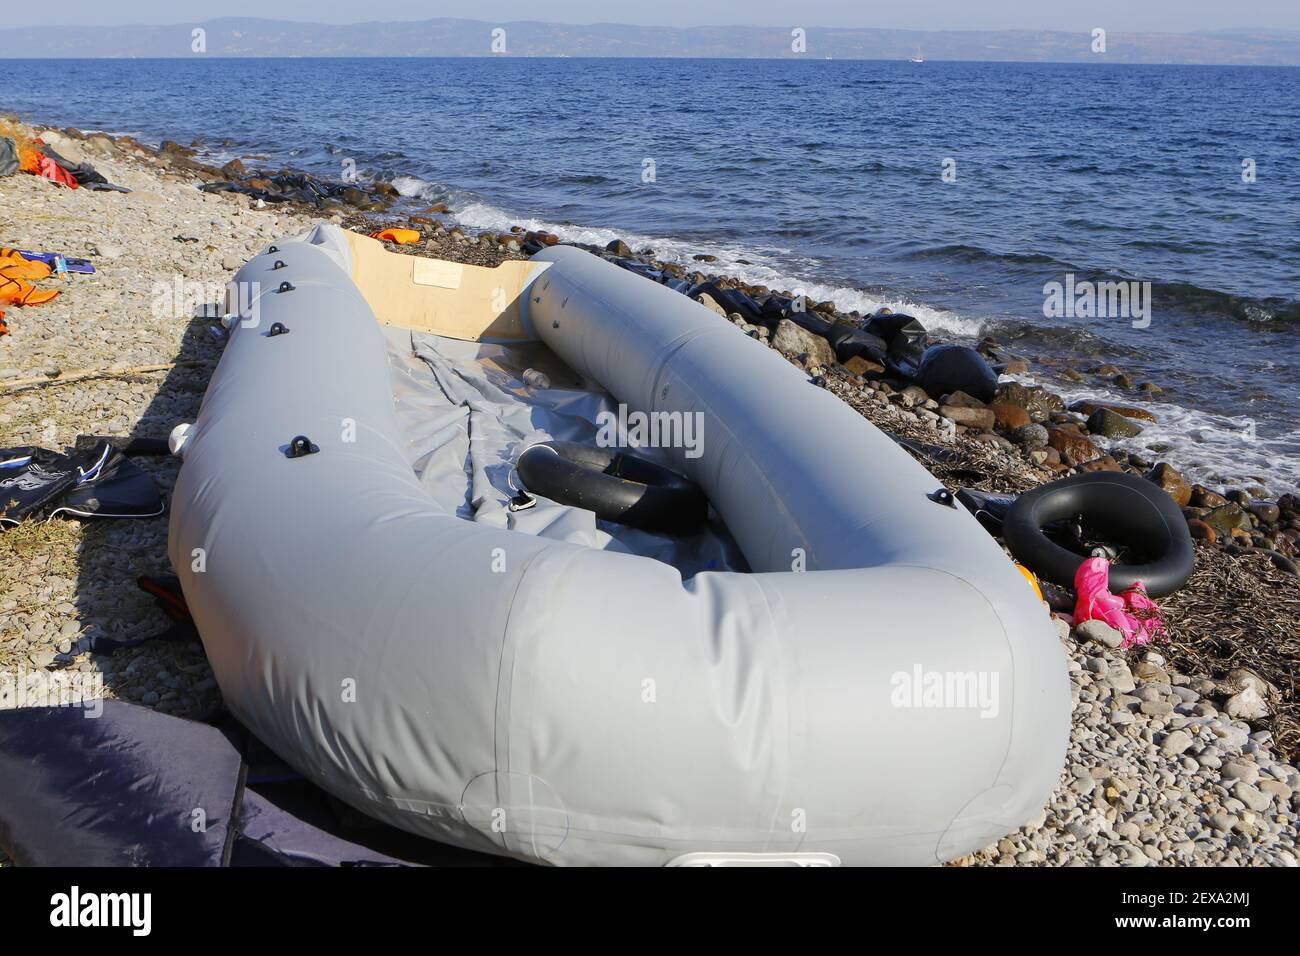 Am Strand liegt ein ausrangierbares Schlauchboot aus Schlauchboot, das von  den Flüchtlingen zur Überquerung von der Türkei nach Lesbos genutzt wurde.  Hunderte von Flüchtlingen, hauptsächlich aus Syrien, dem Irak und  Afghanistan, kommen